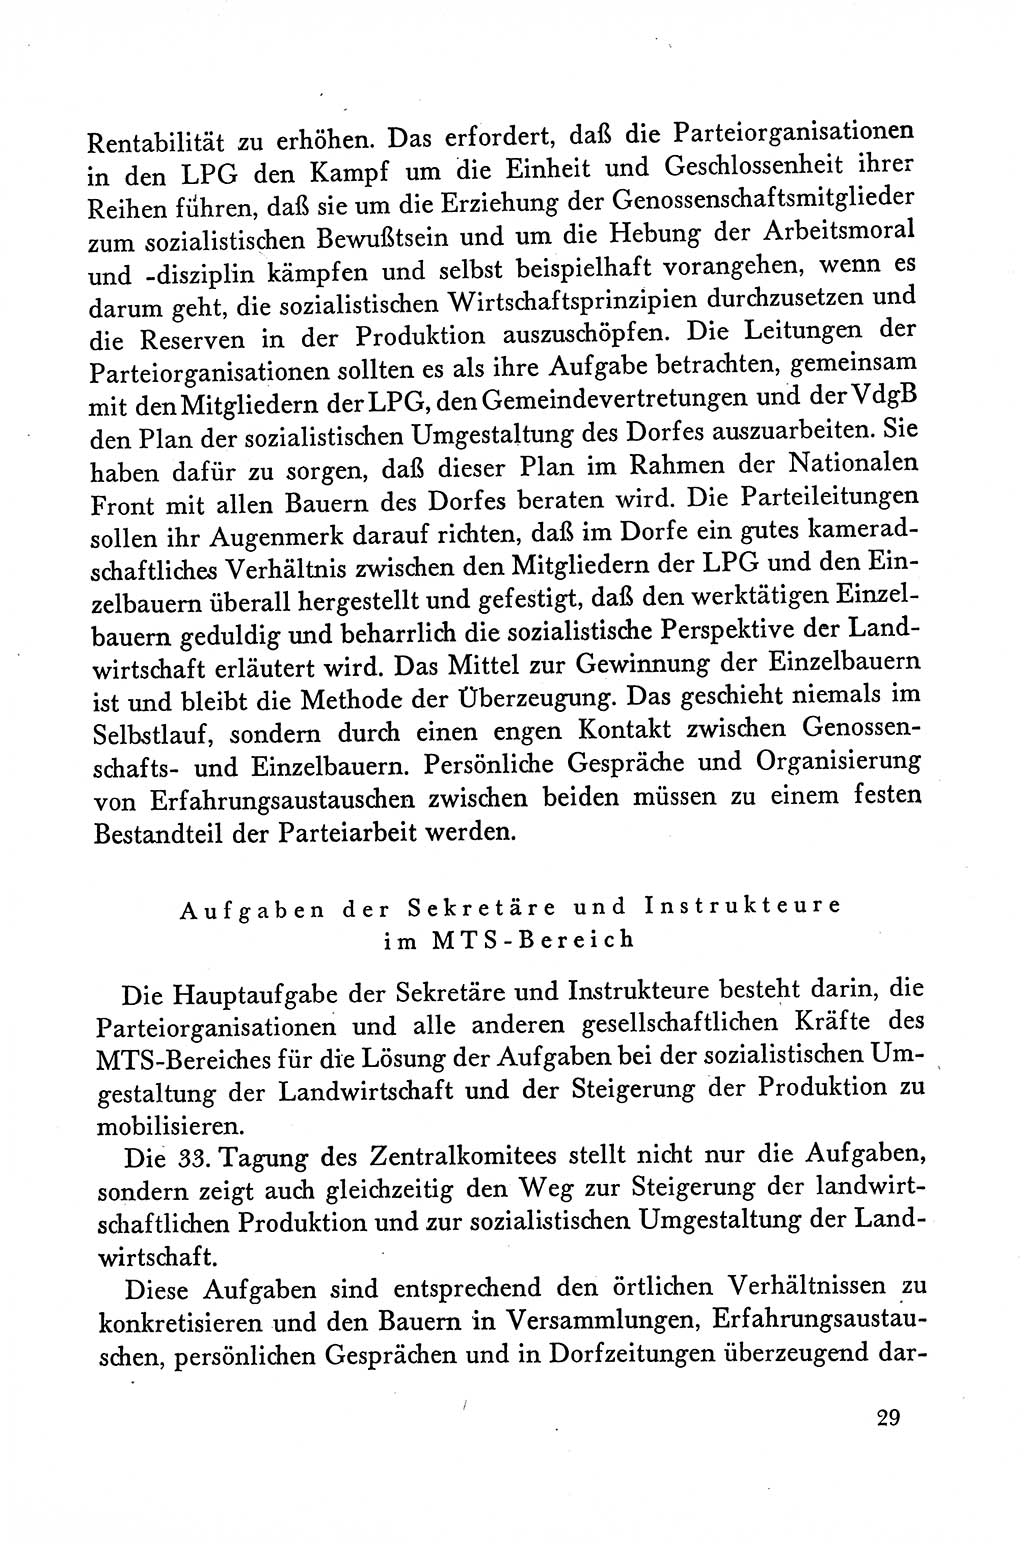 Dokumente der Sozialistischen Einheitspartei Deutschlands (SED) [Deutsche Demokratische Republik (DDR)] 1958-1959, Seite 29 (Dok. SED DDR 1958-1959, S. 29)